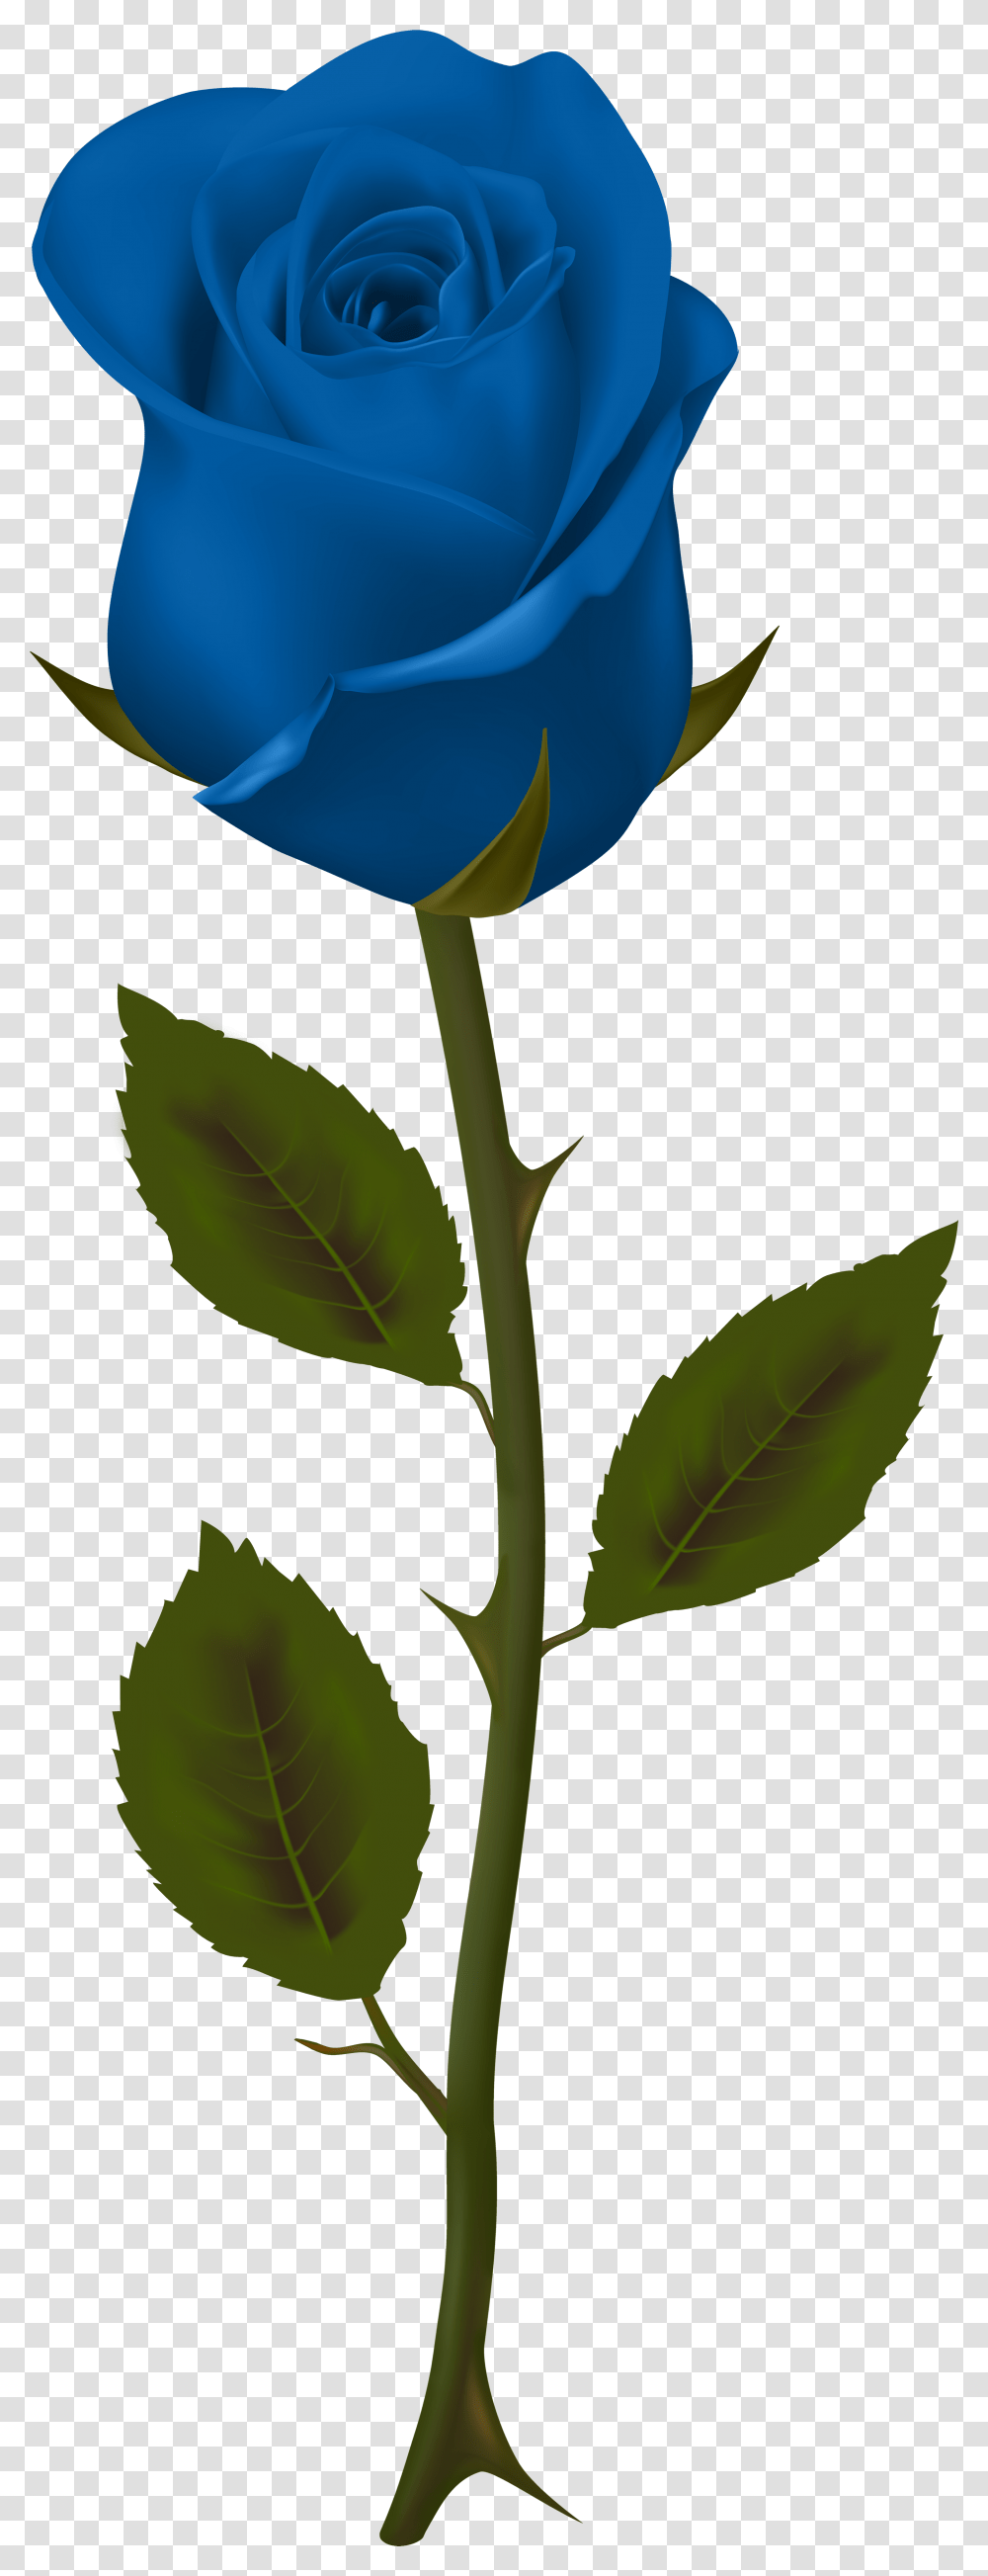 Background Blue Roses Blue Rose No Background, Plant, Flower, Blossom, Leaf Transparent Png